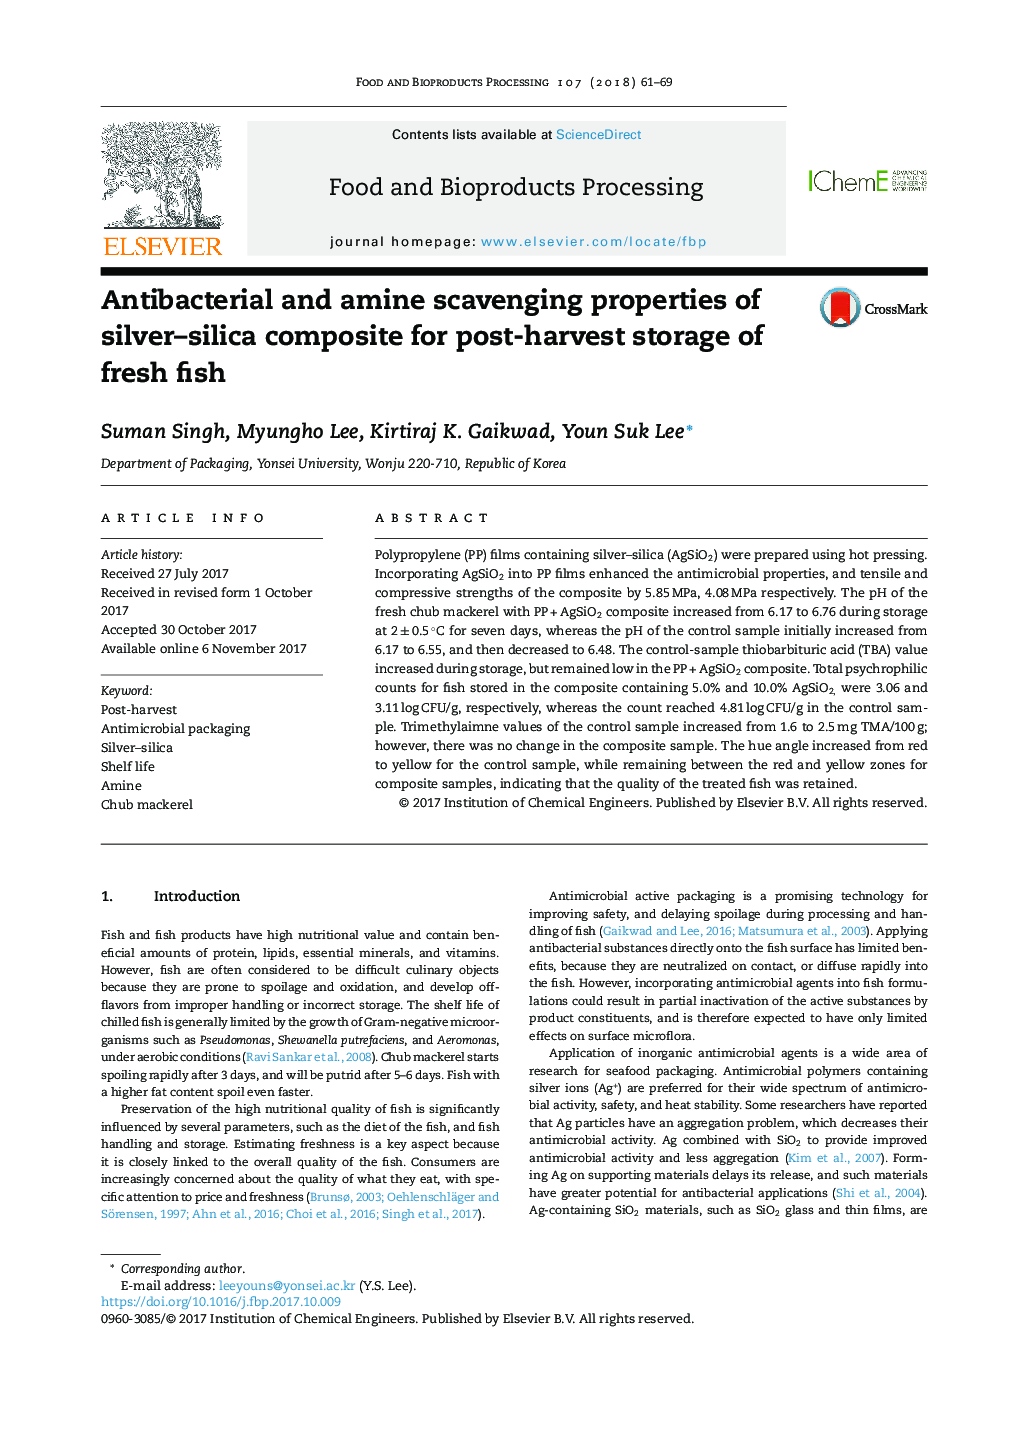 خواص ضدباکتریایی و آمین از ترکیب کامپوزیت سیلیس نقره برای نگهداری پس از برداشت ماهی تازه 